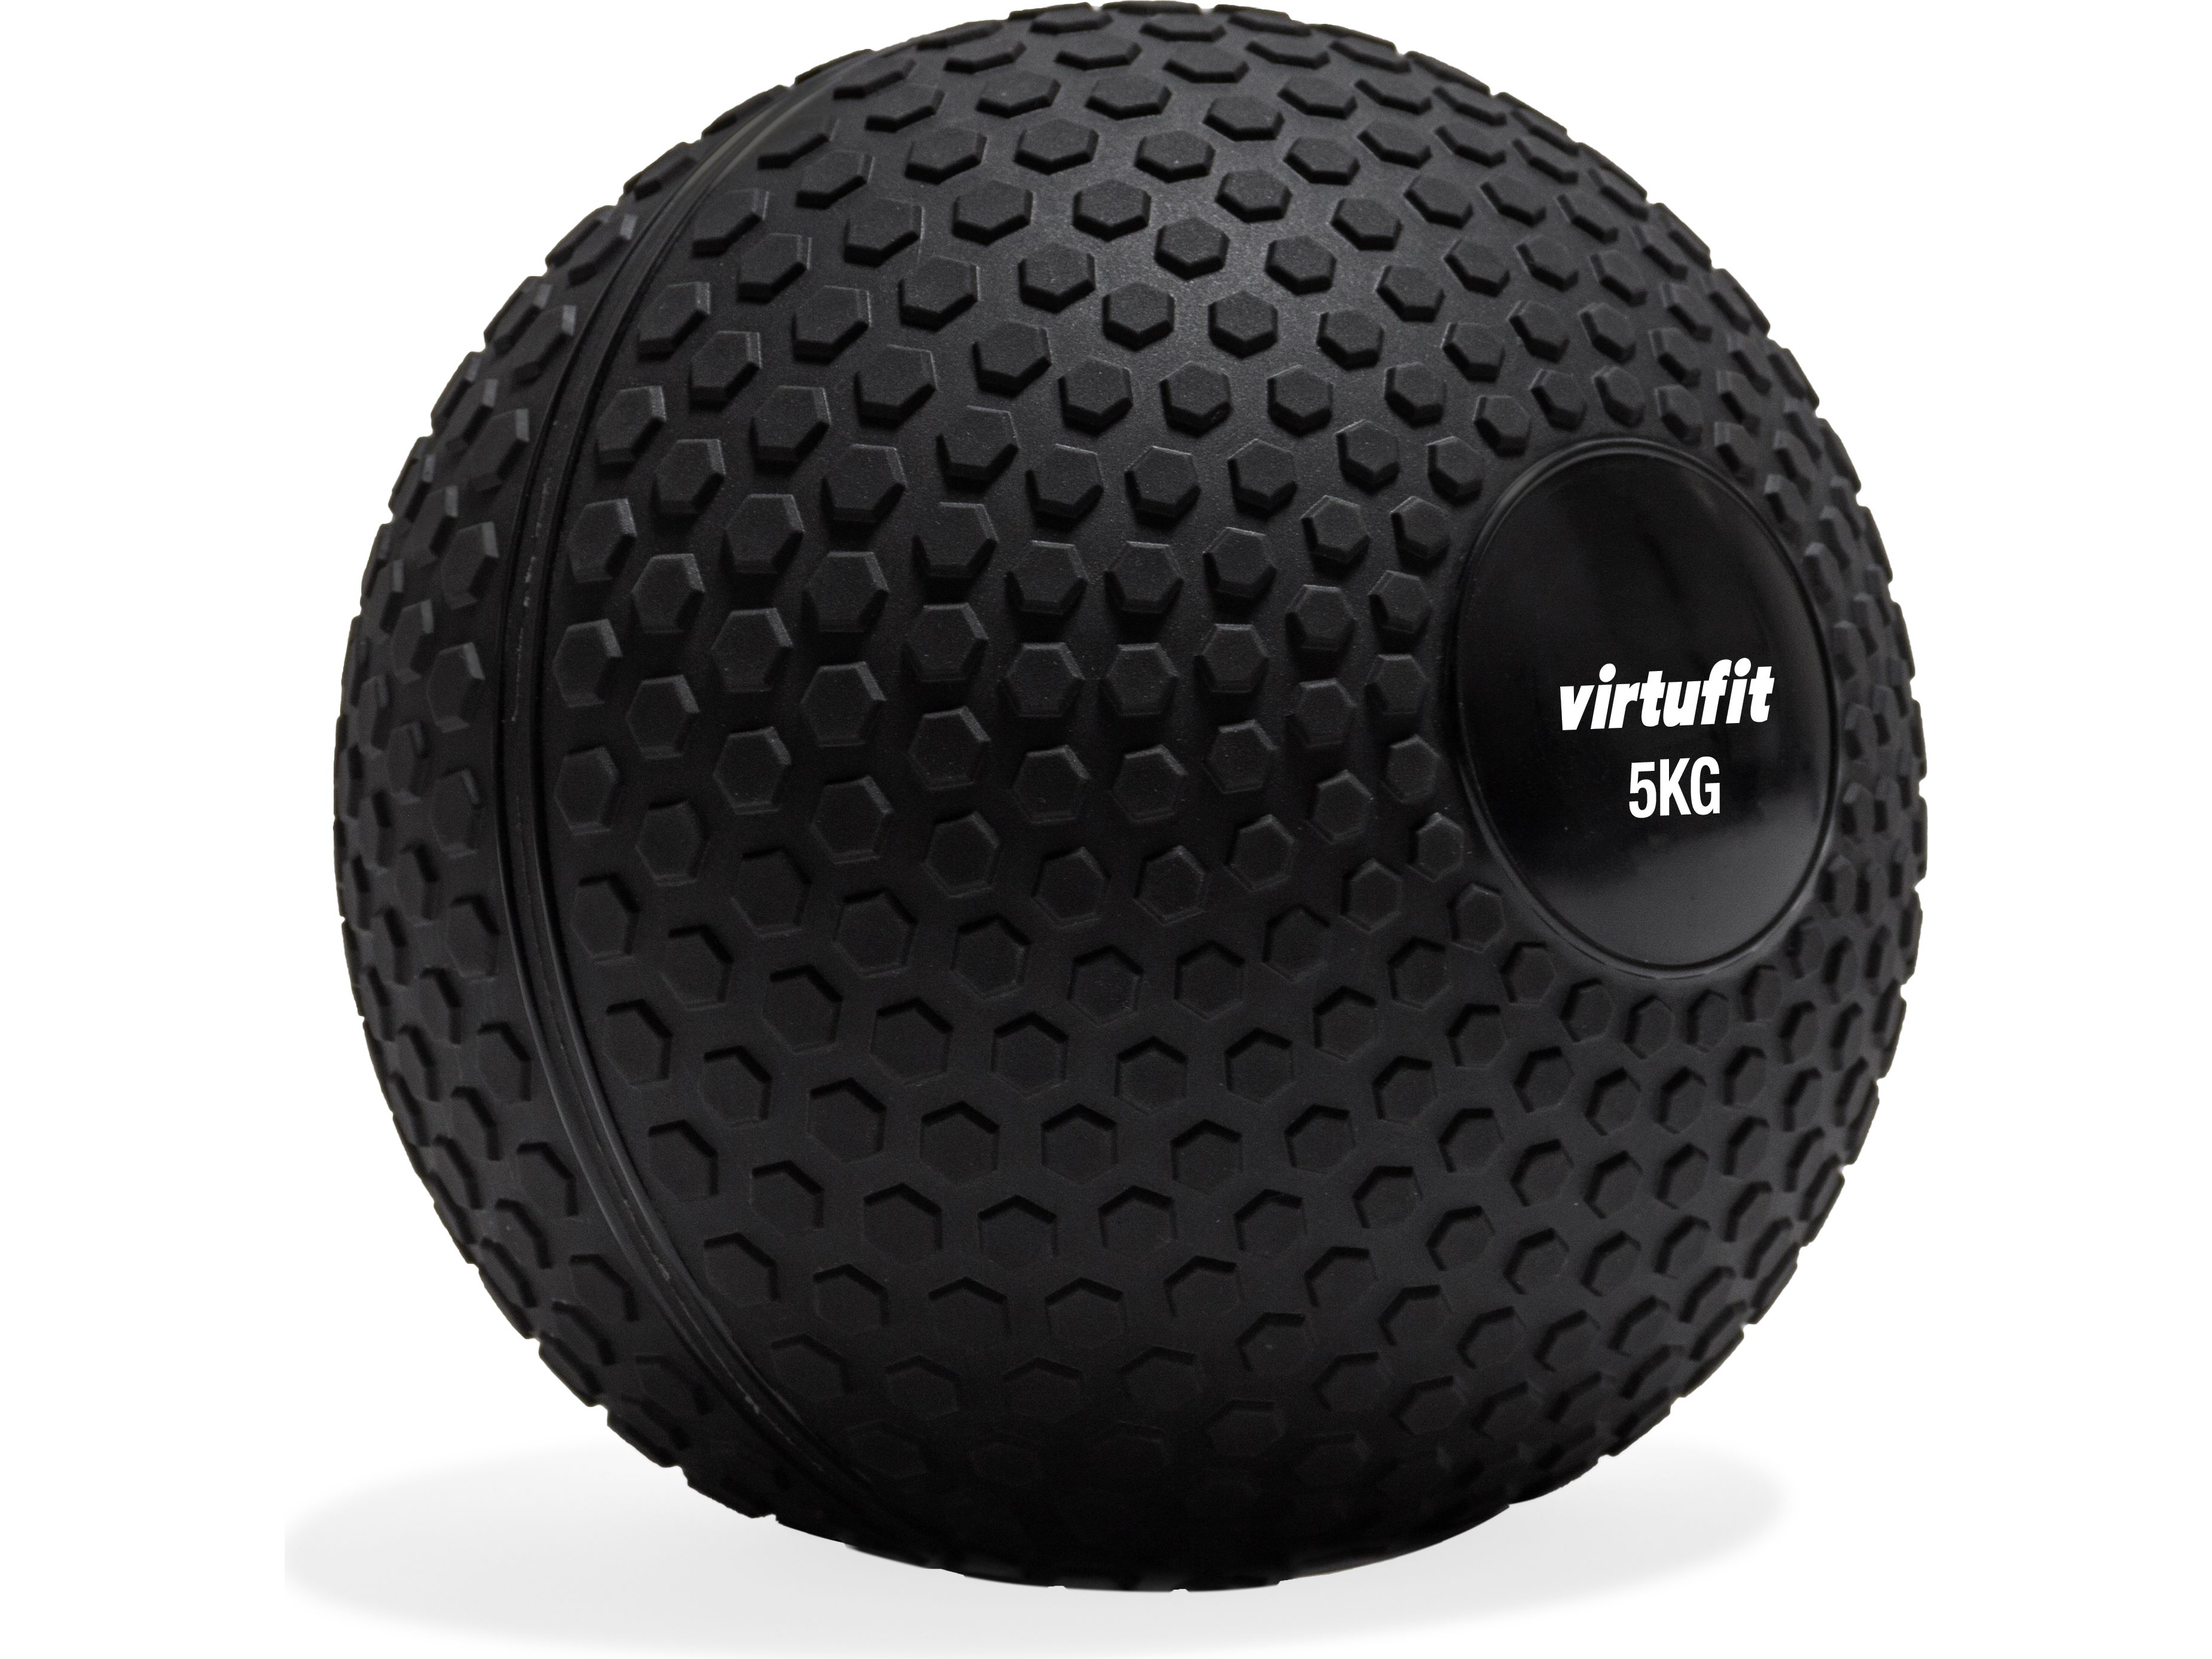 virtufit-slam-ball-crossfit-ball-5-kg